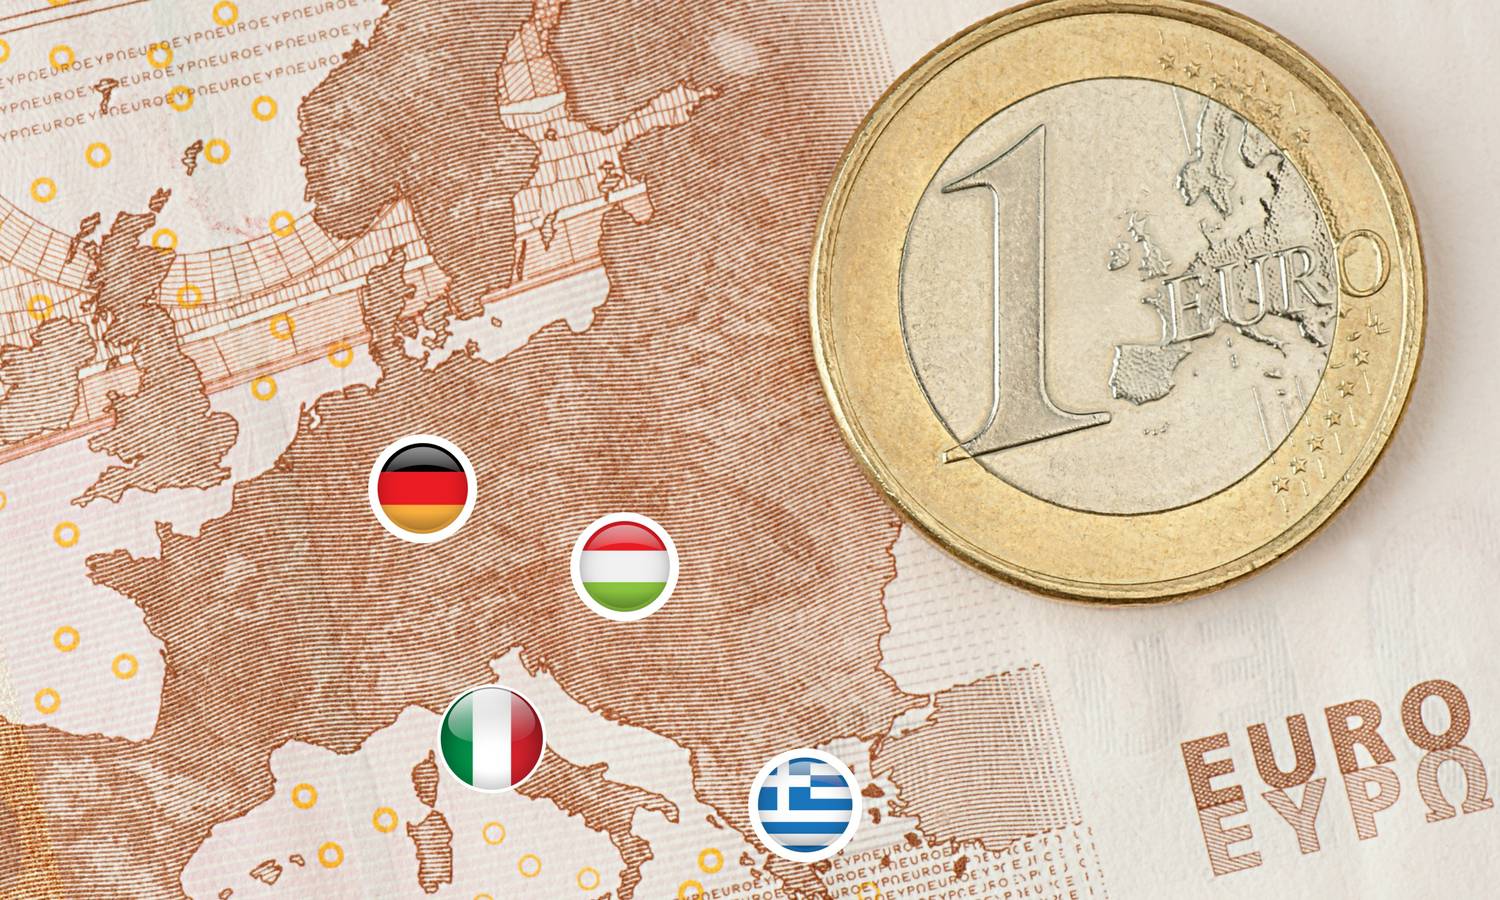 U euru (ni)je spas: Krediti će biti jeftiniji, a cijene će rasti...